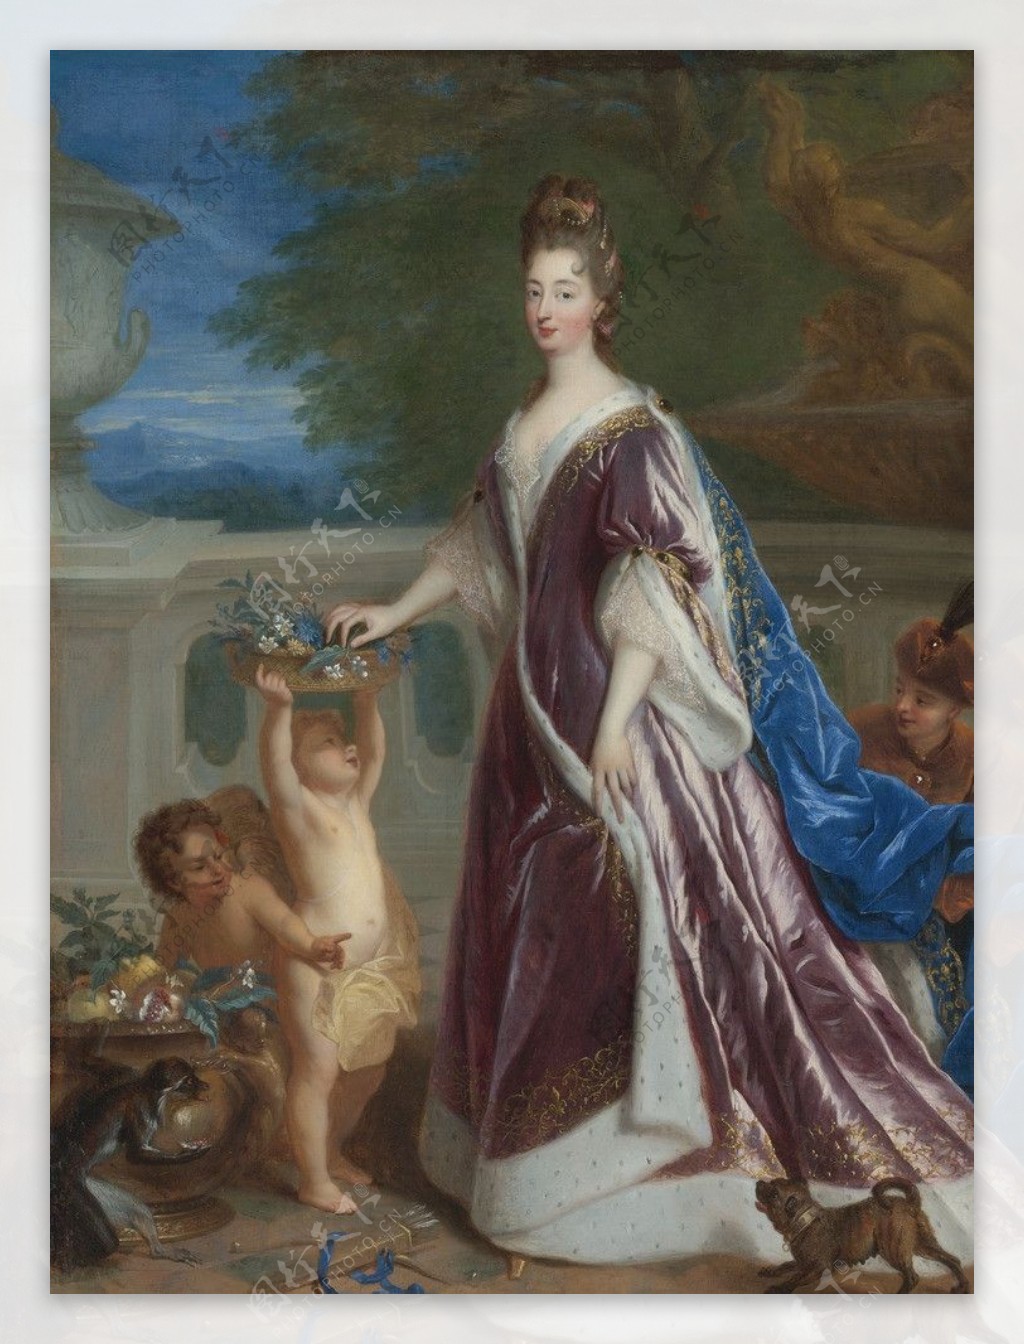 伊莉莎白183夏洛特公主图片